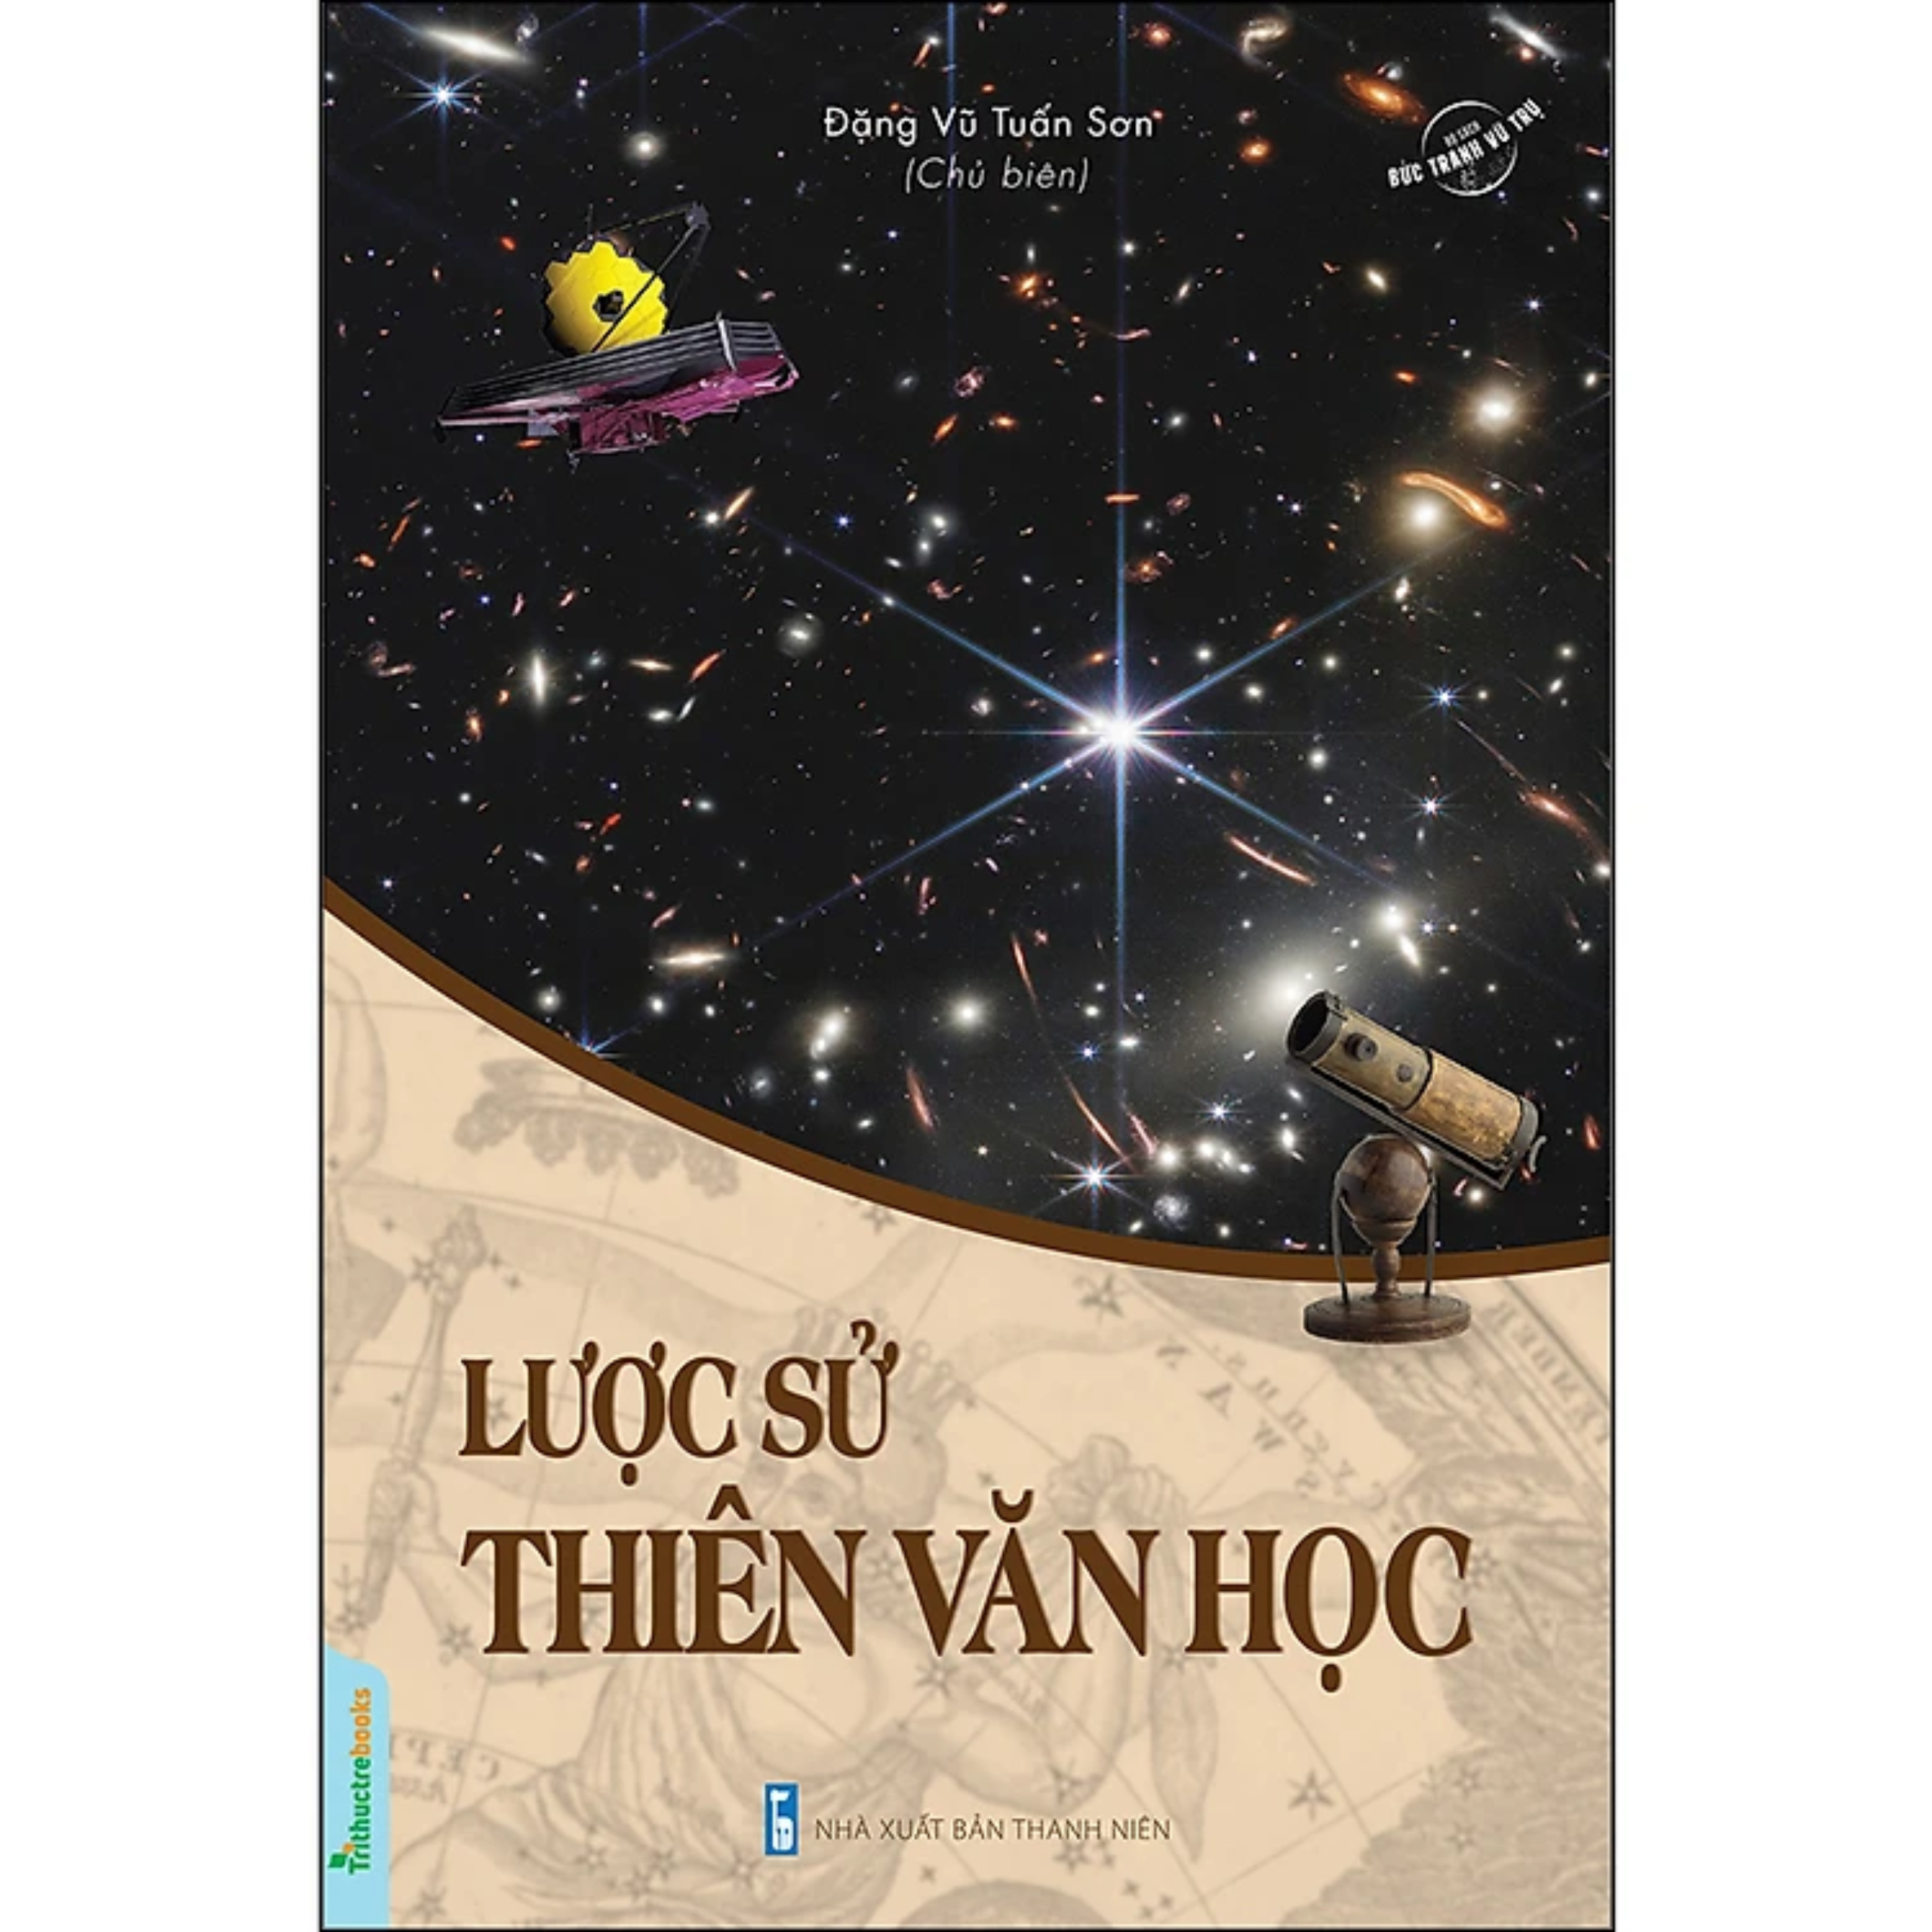 Boxset 5Q Bách Khoa Toàn Thư Khoa Học Vũ Trụ Các Hành Tinh: Các Chòm Sao + Lược Sử Thiên Văn Học + Từ Điển Thiên Văn Học Và Vật Lý Thiên Văn + Trái Đất Và Hệ Mặt Trời + Xa Hơn Mây Oort – Tới Ranh Giới Cúa Không Gian Và Thời Gian